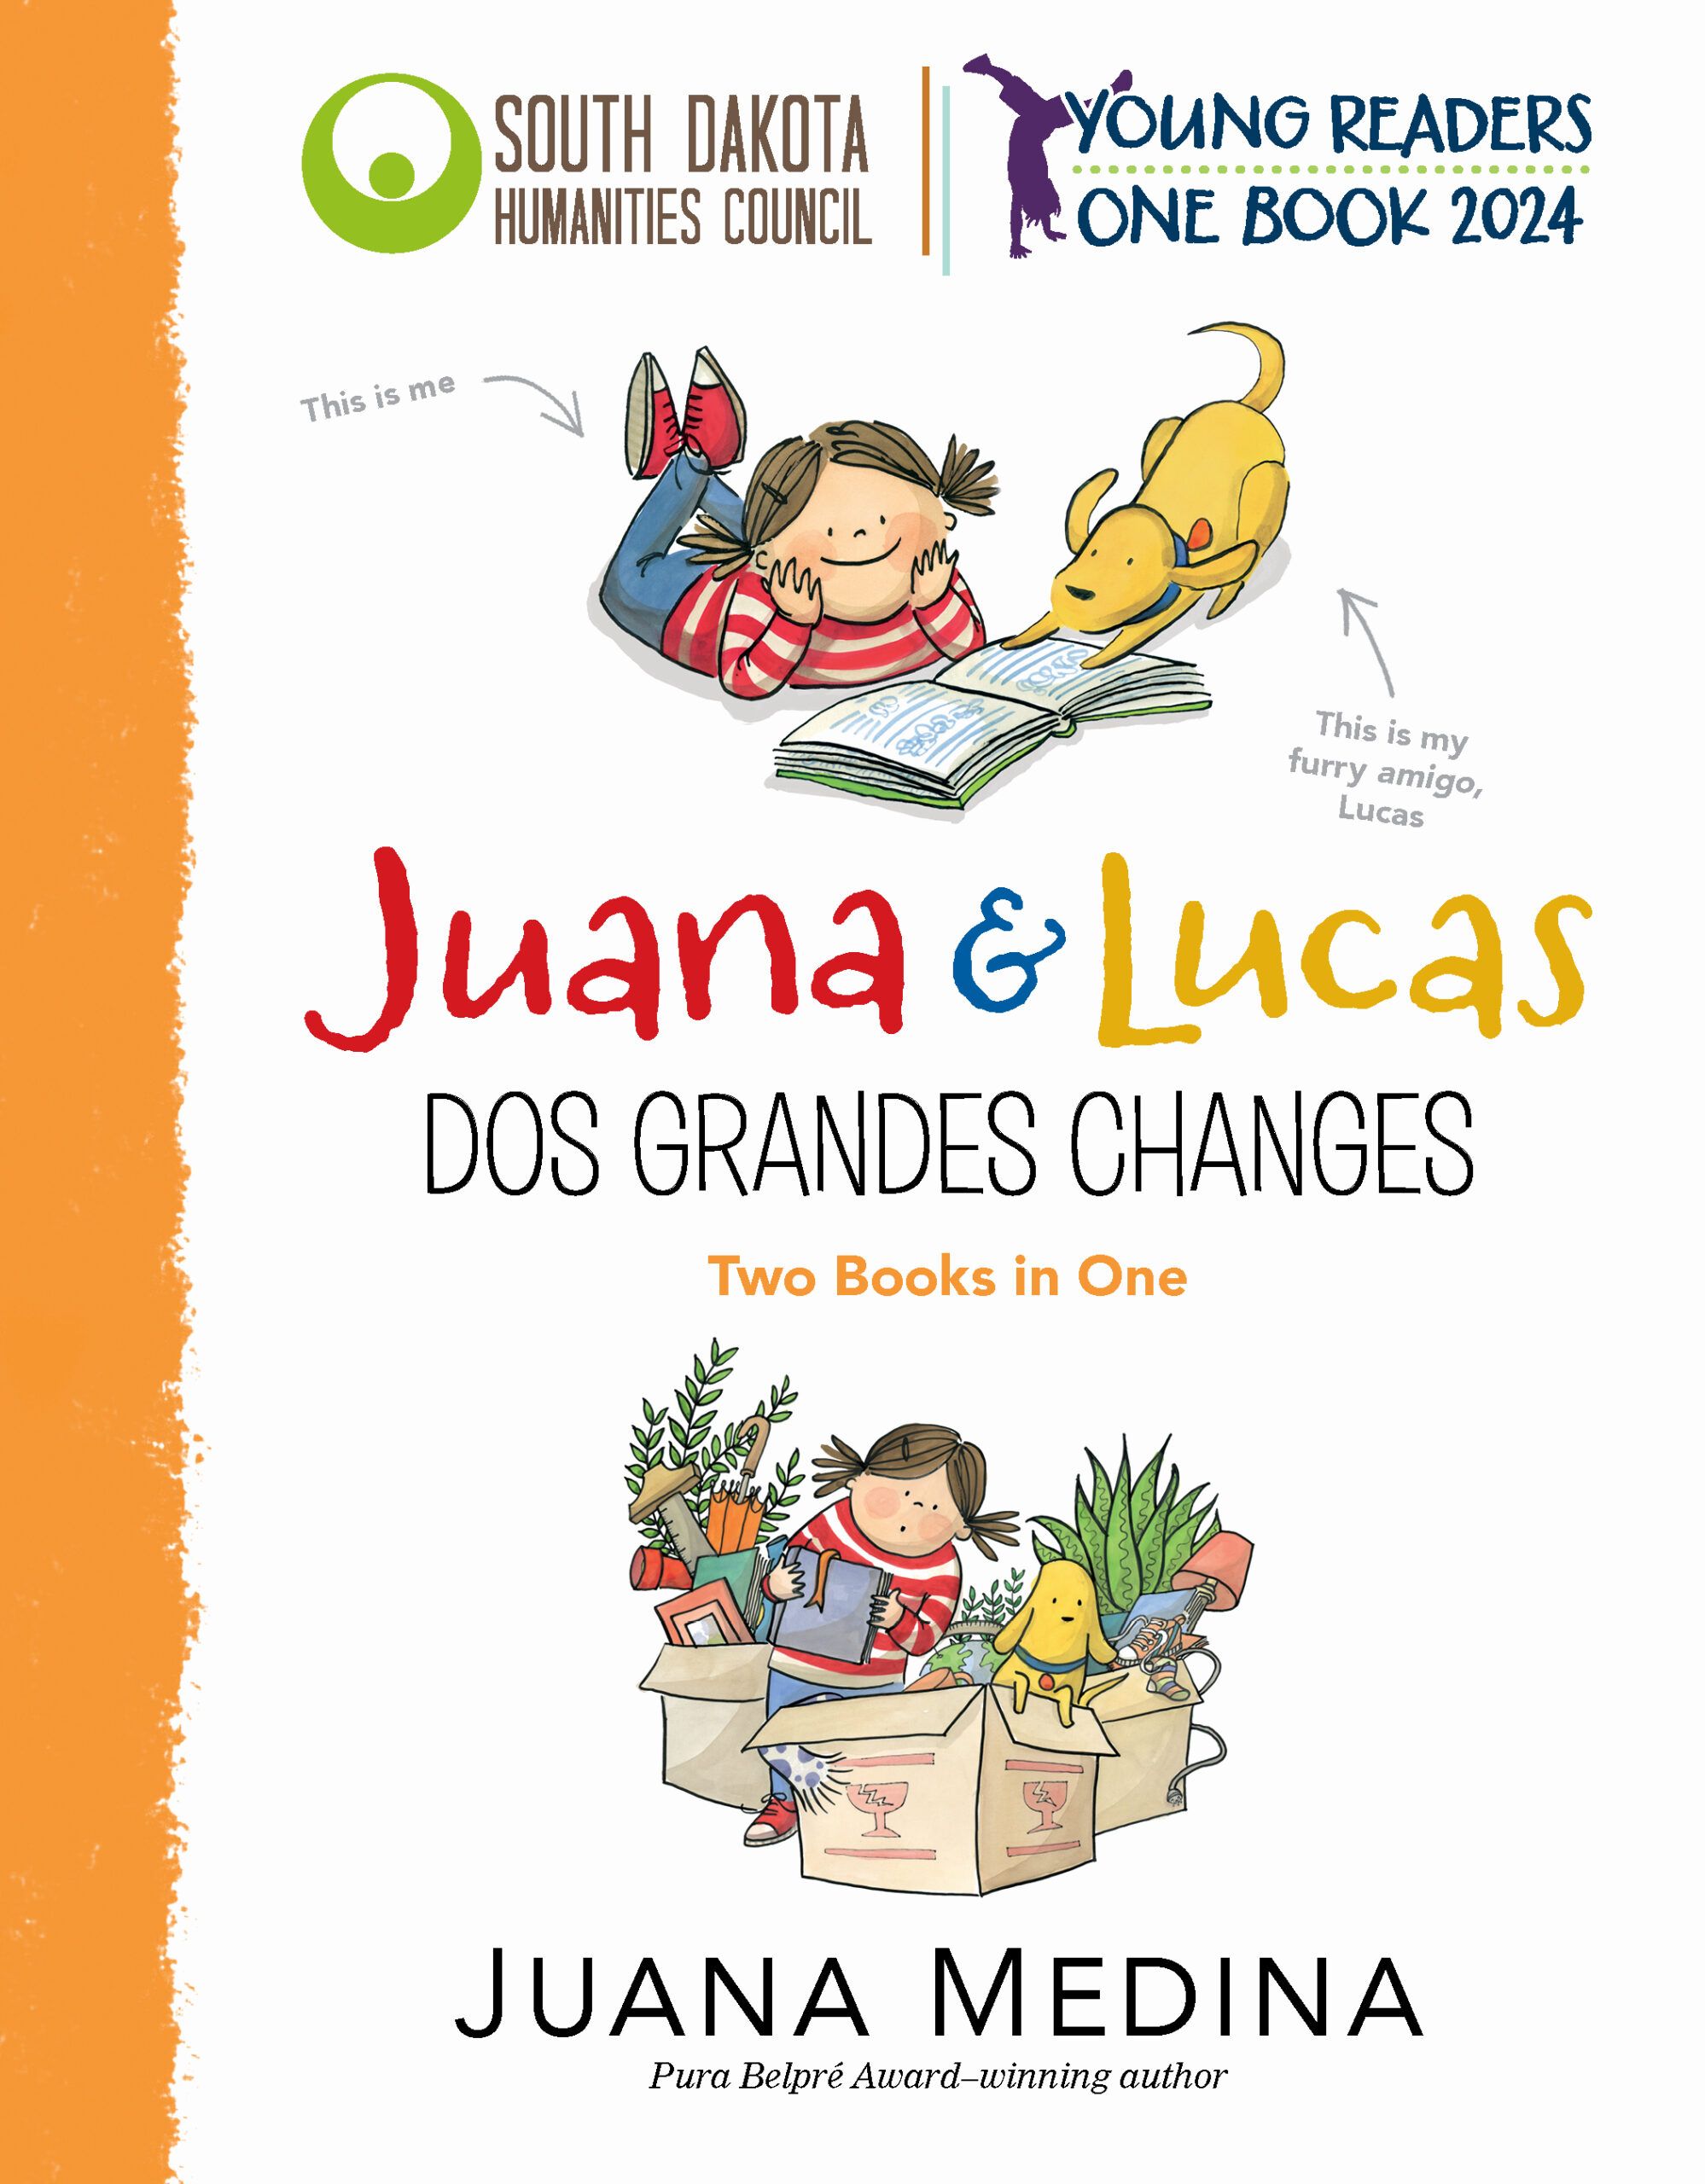 Juan & Lucas - Juana Medina